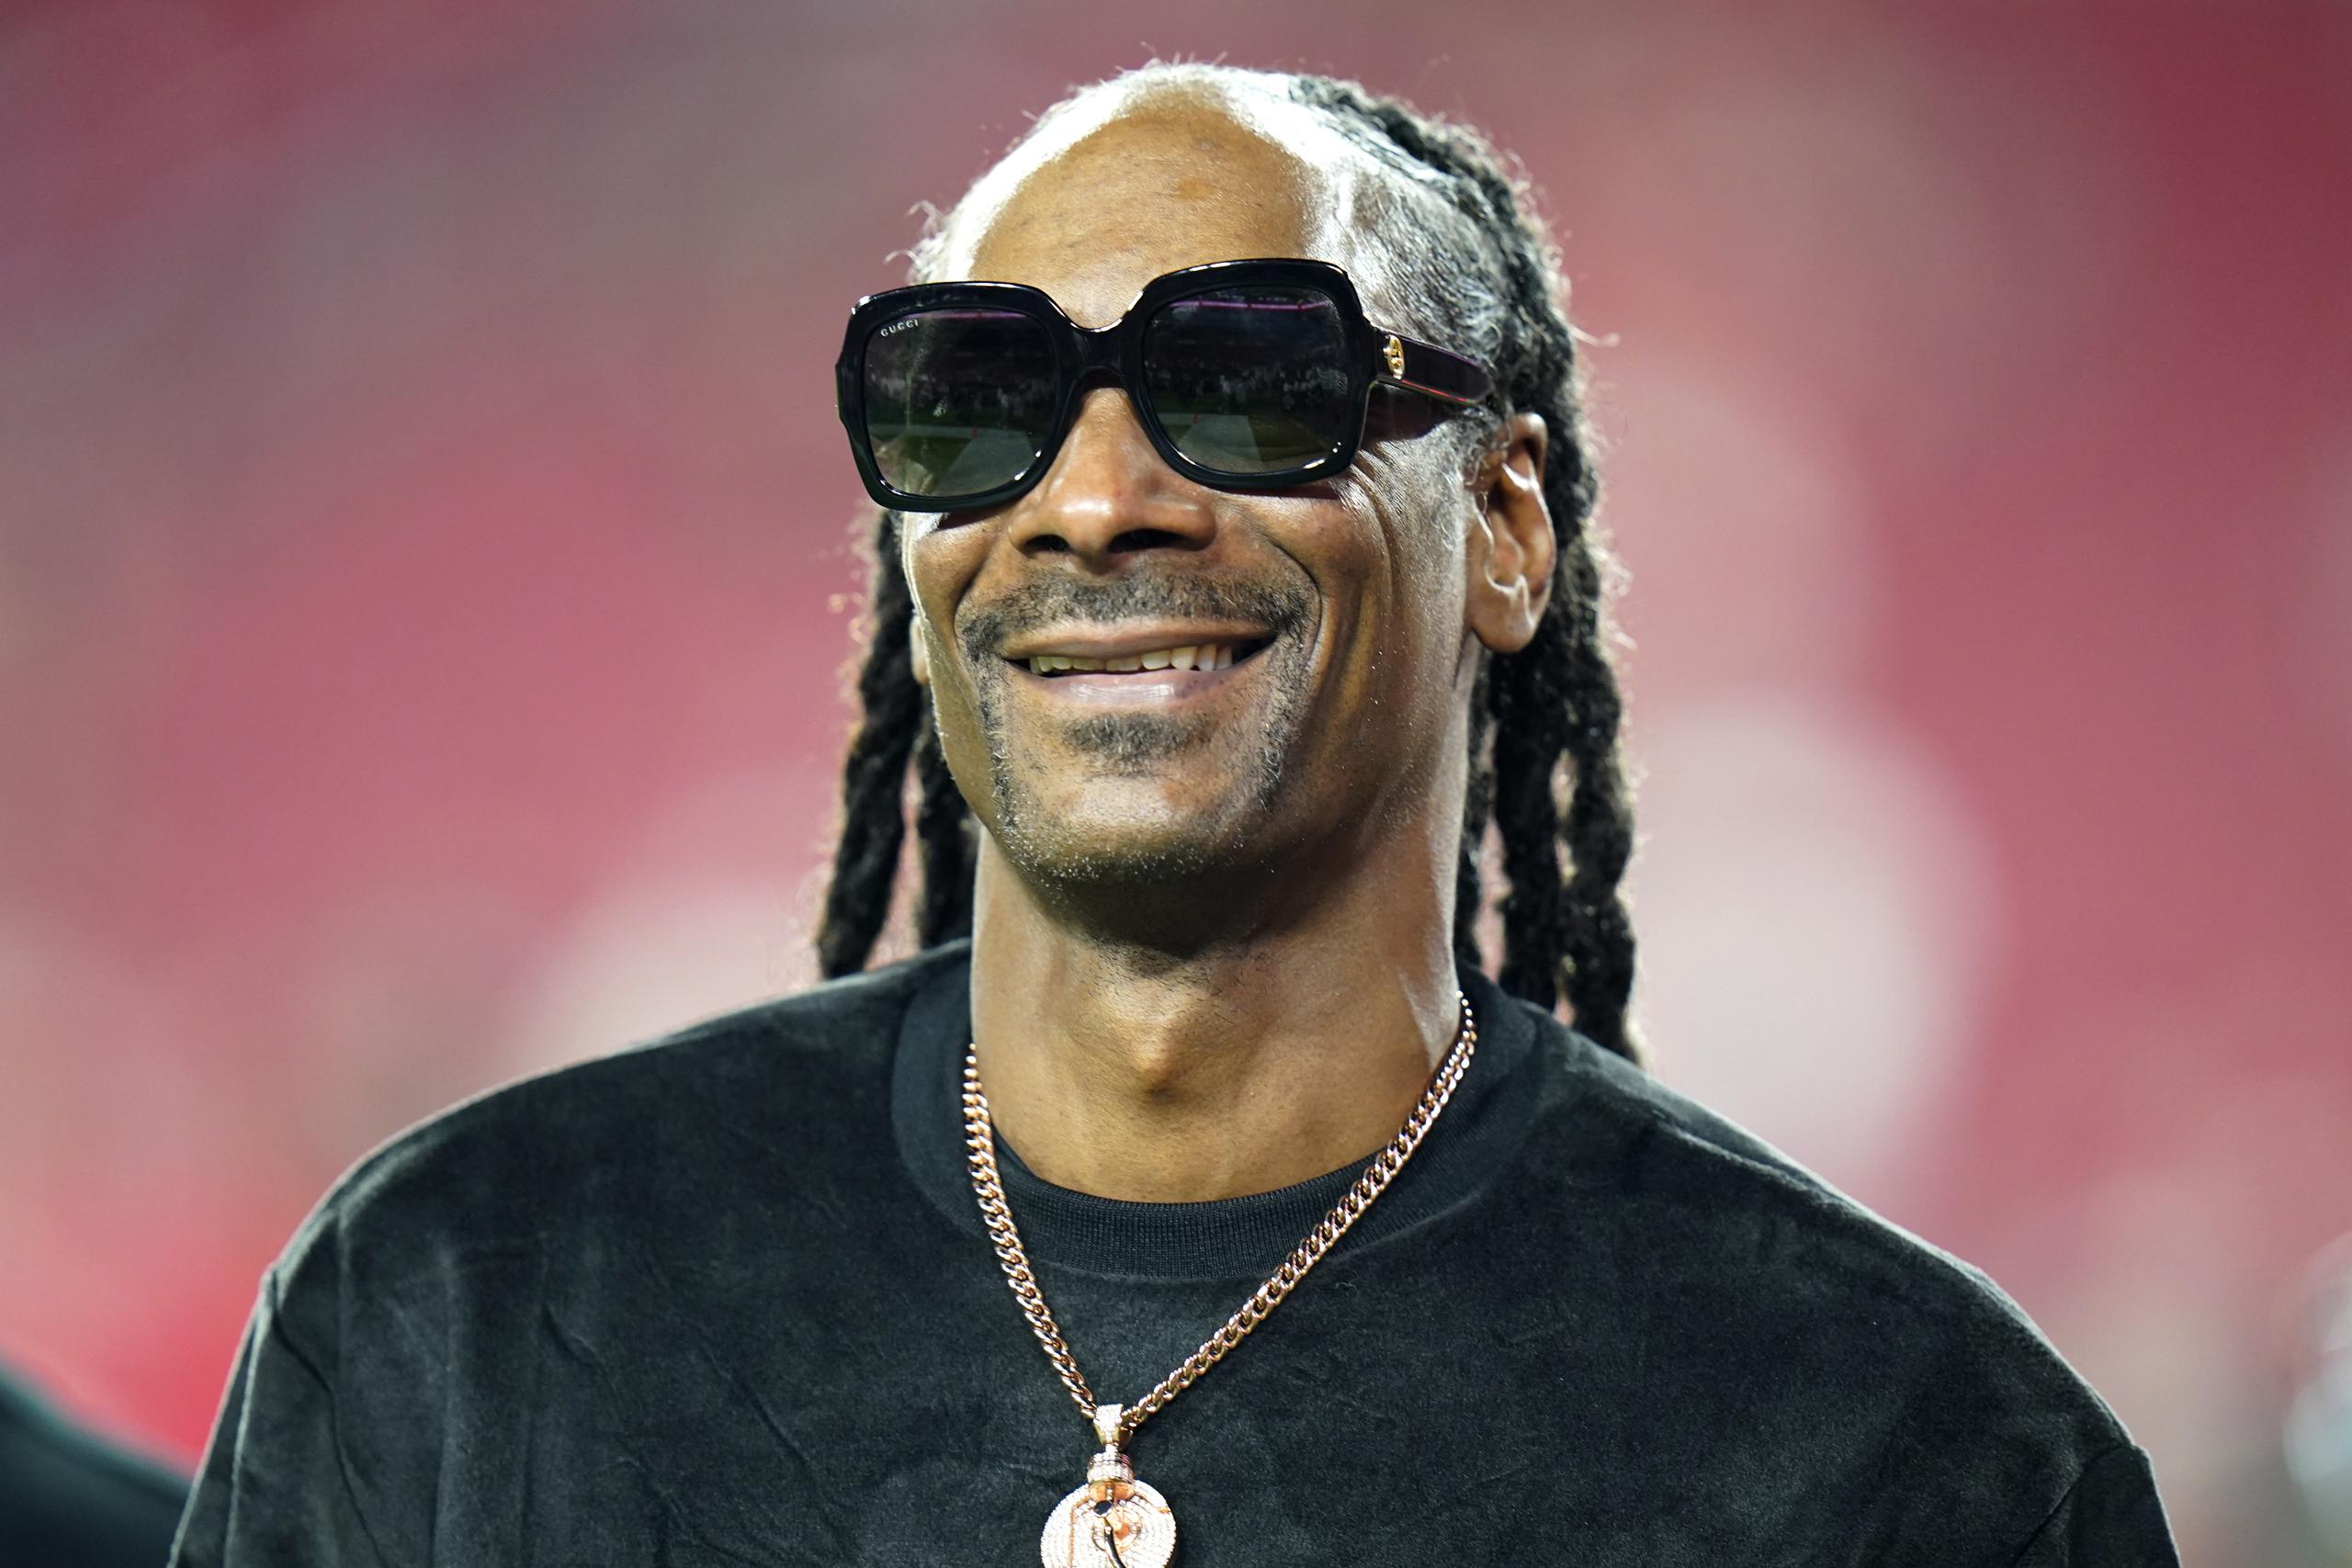 Snoop Dogg ha dicho que no se sentirá nervioso sobre su actuación del domingo hasta tanto termine la misma.